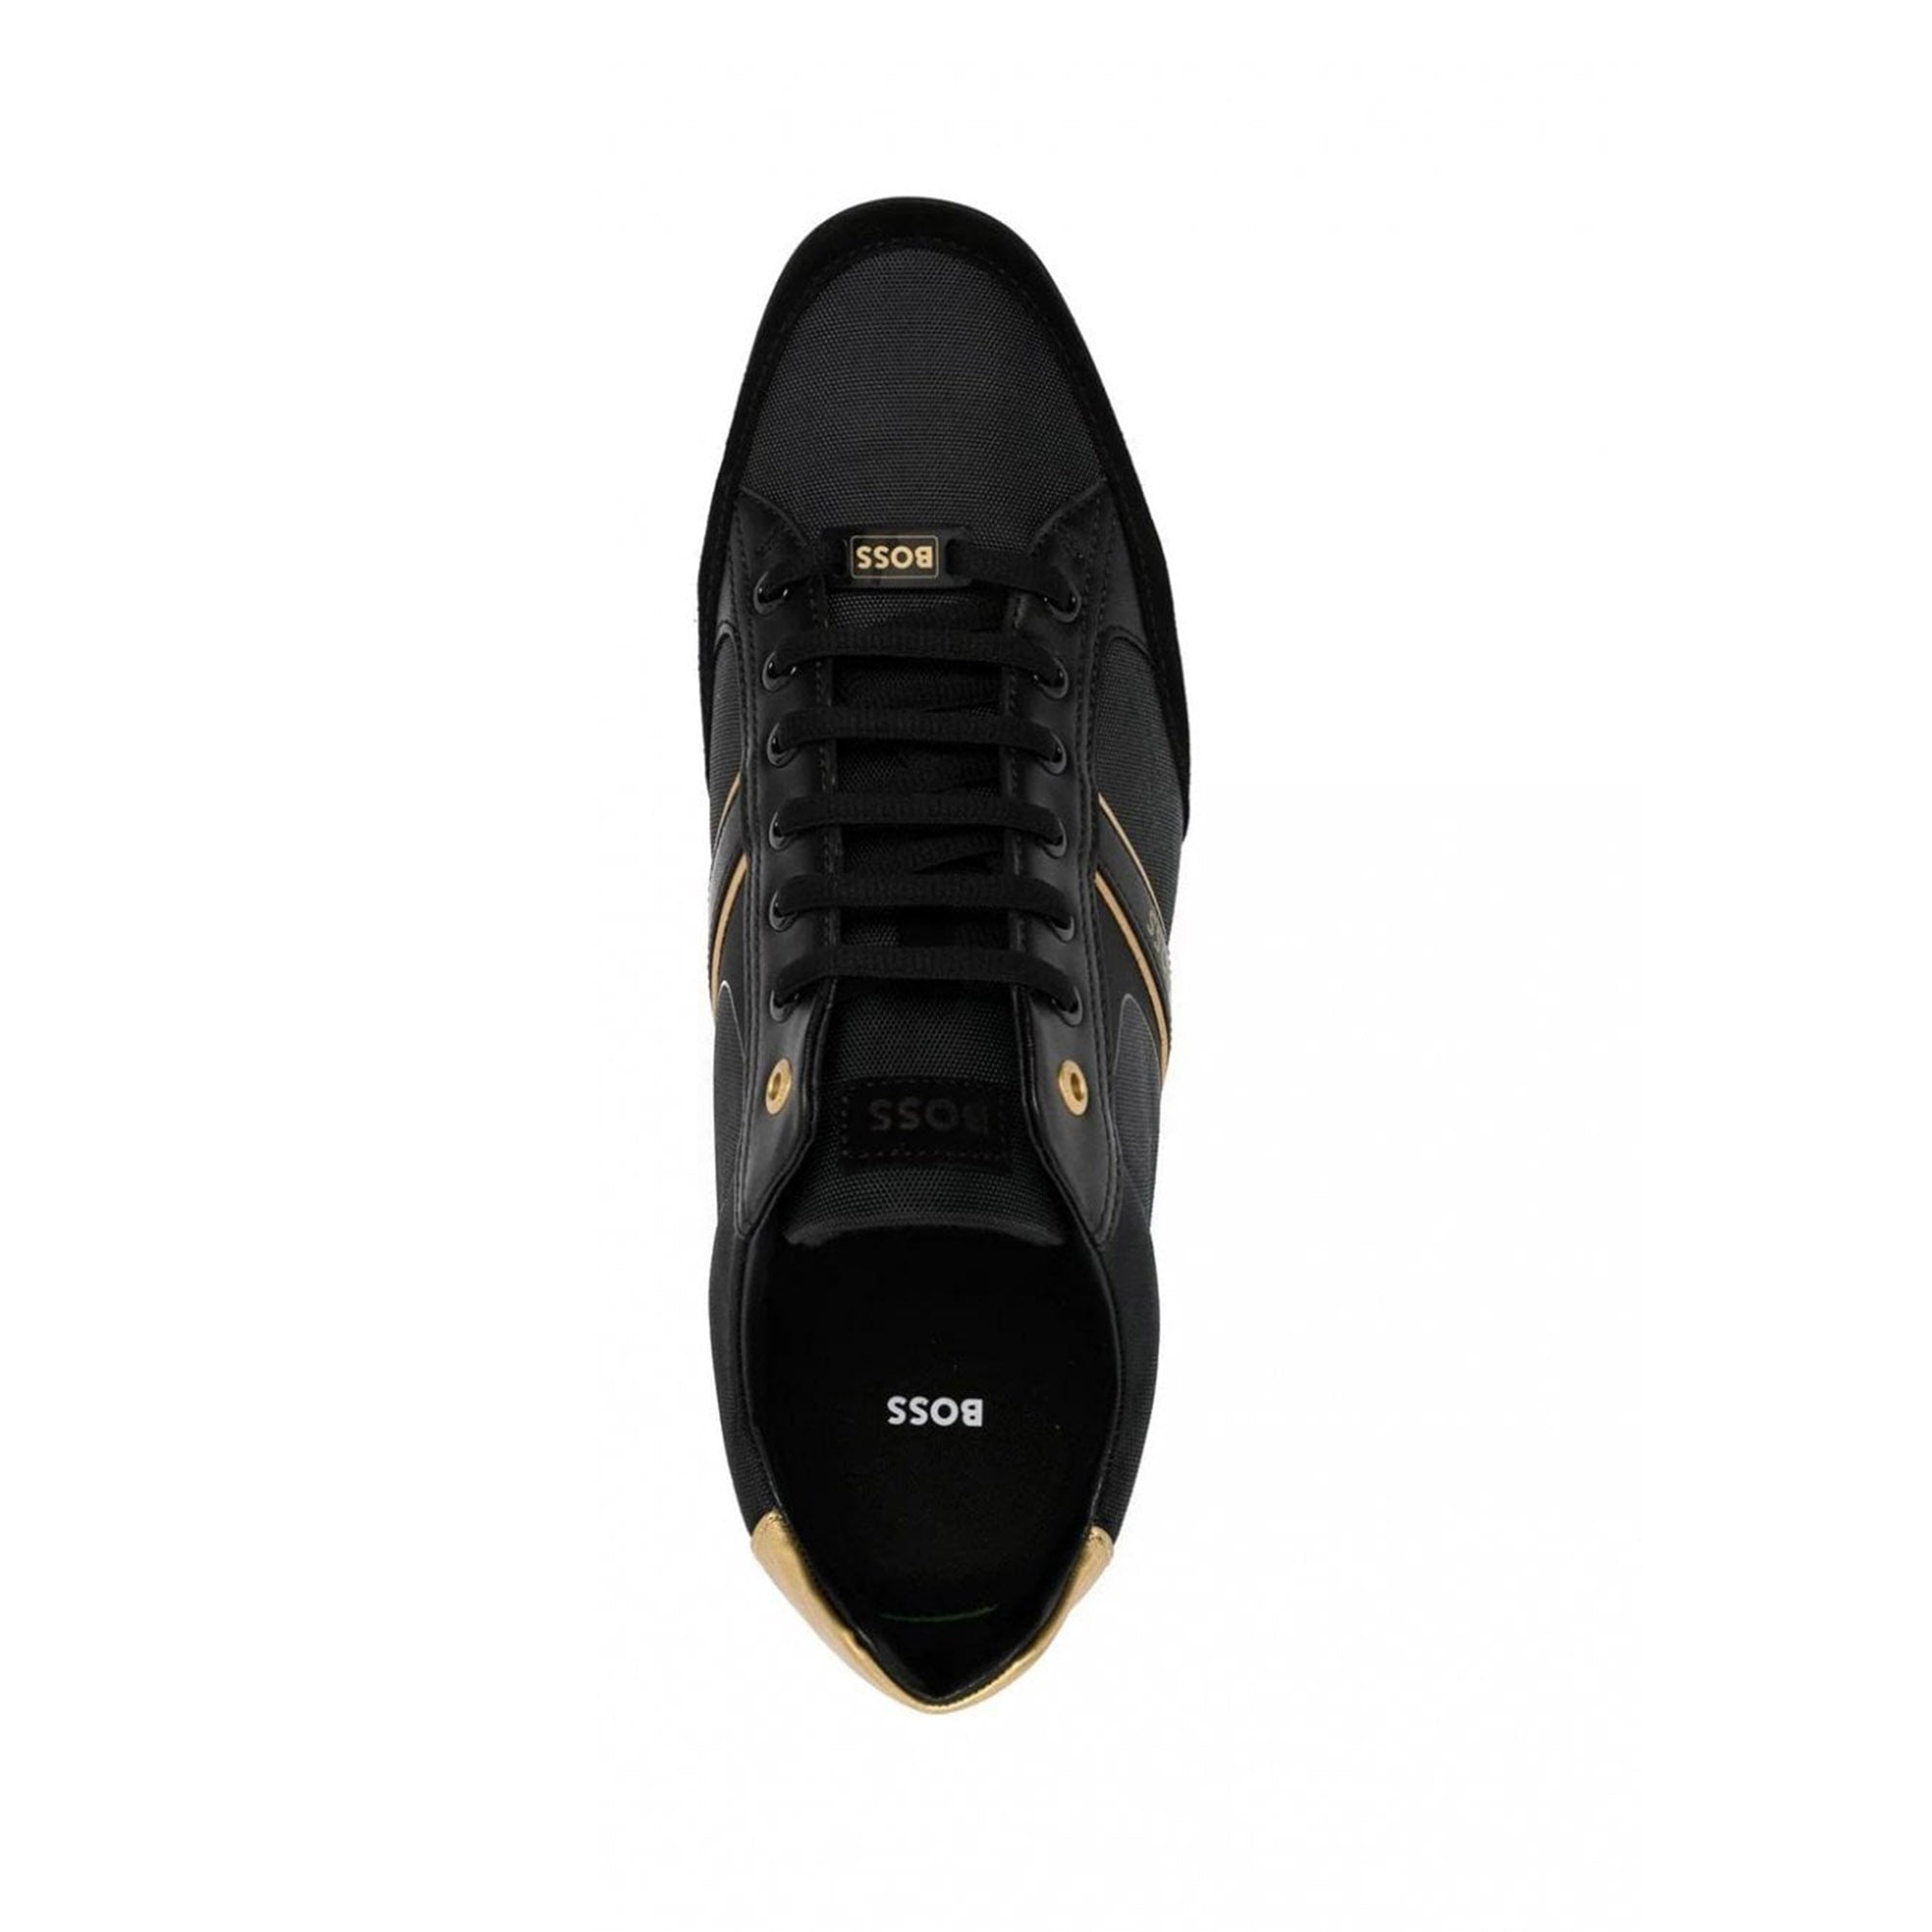 Hugo Boss Mens Saturn Low Sneakers Black